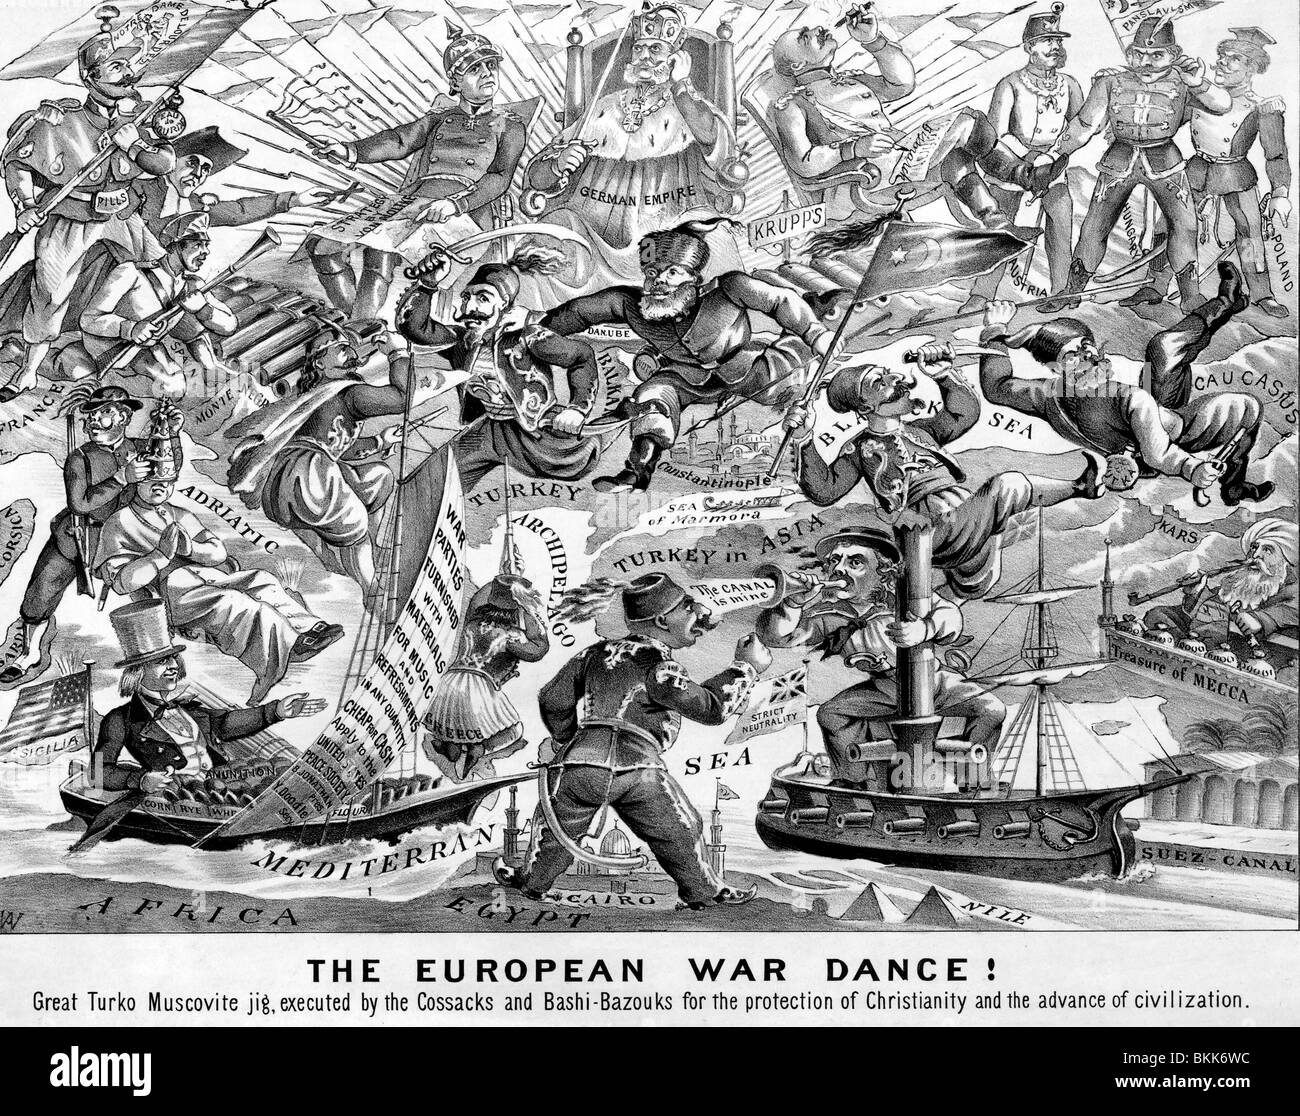 La guerre européenne de la danse ! Grand Gabarit, Muscovite Turko cartoon à partir de 1914, début de la Première Guerre mondiale Banque D'Images